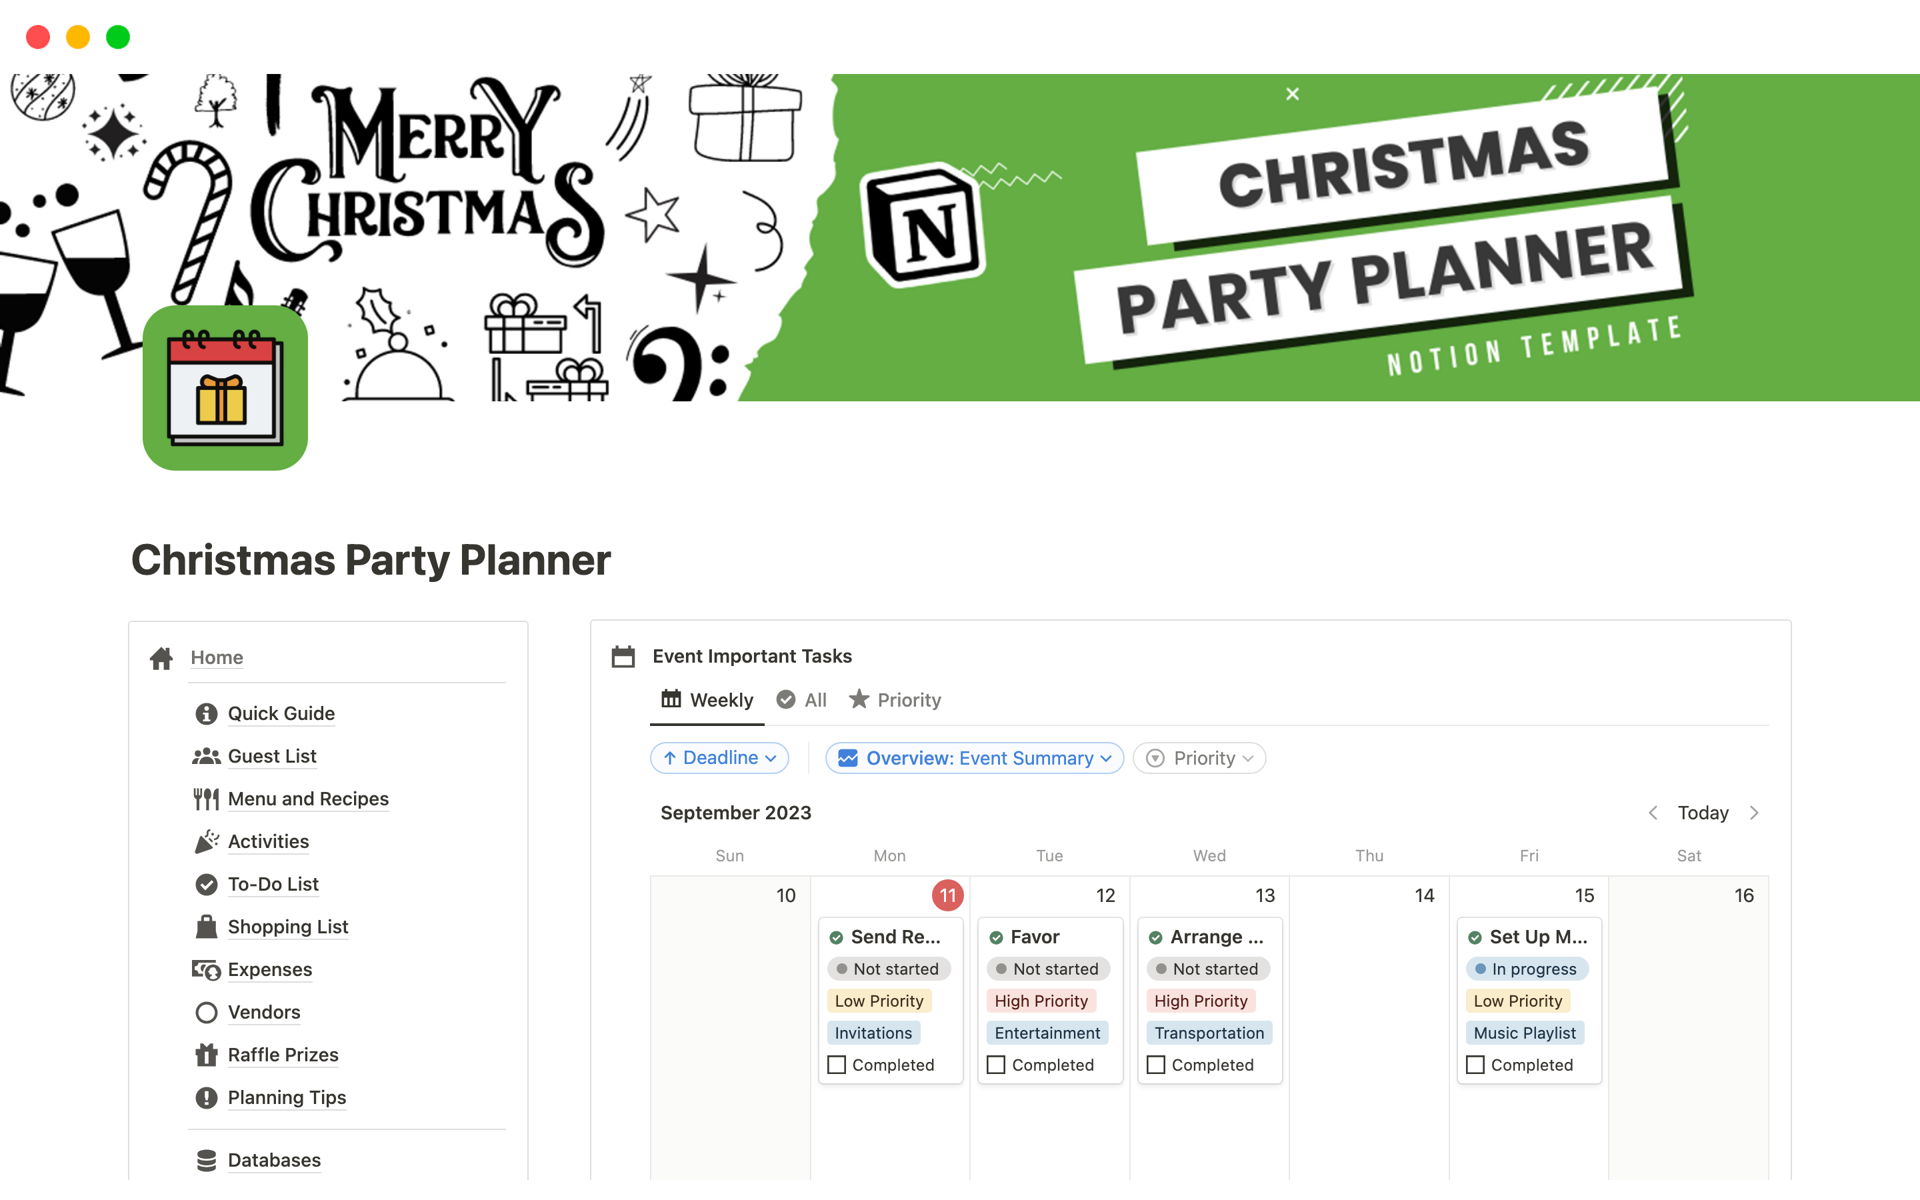 Uma prévia do modelo para Christmas Party Planner